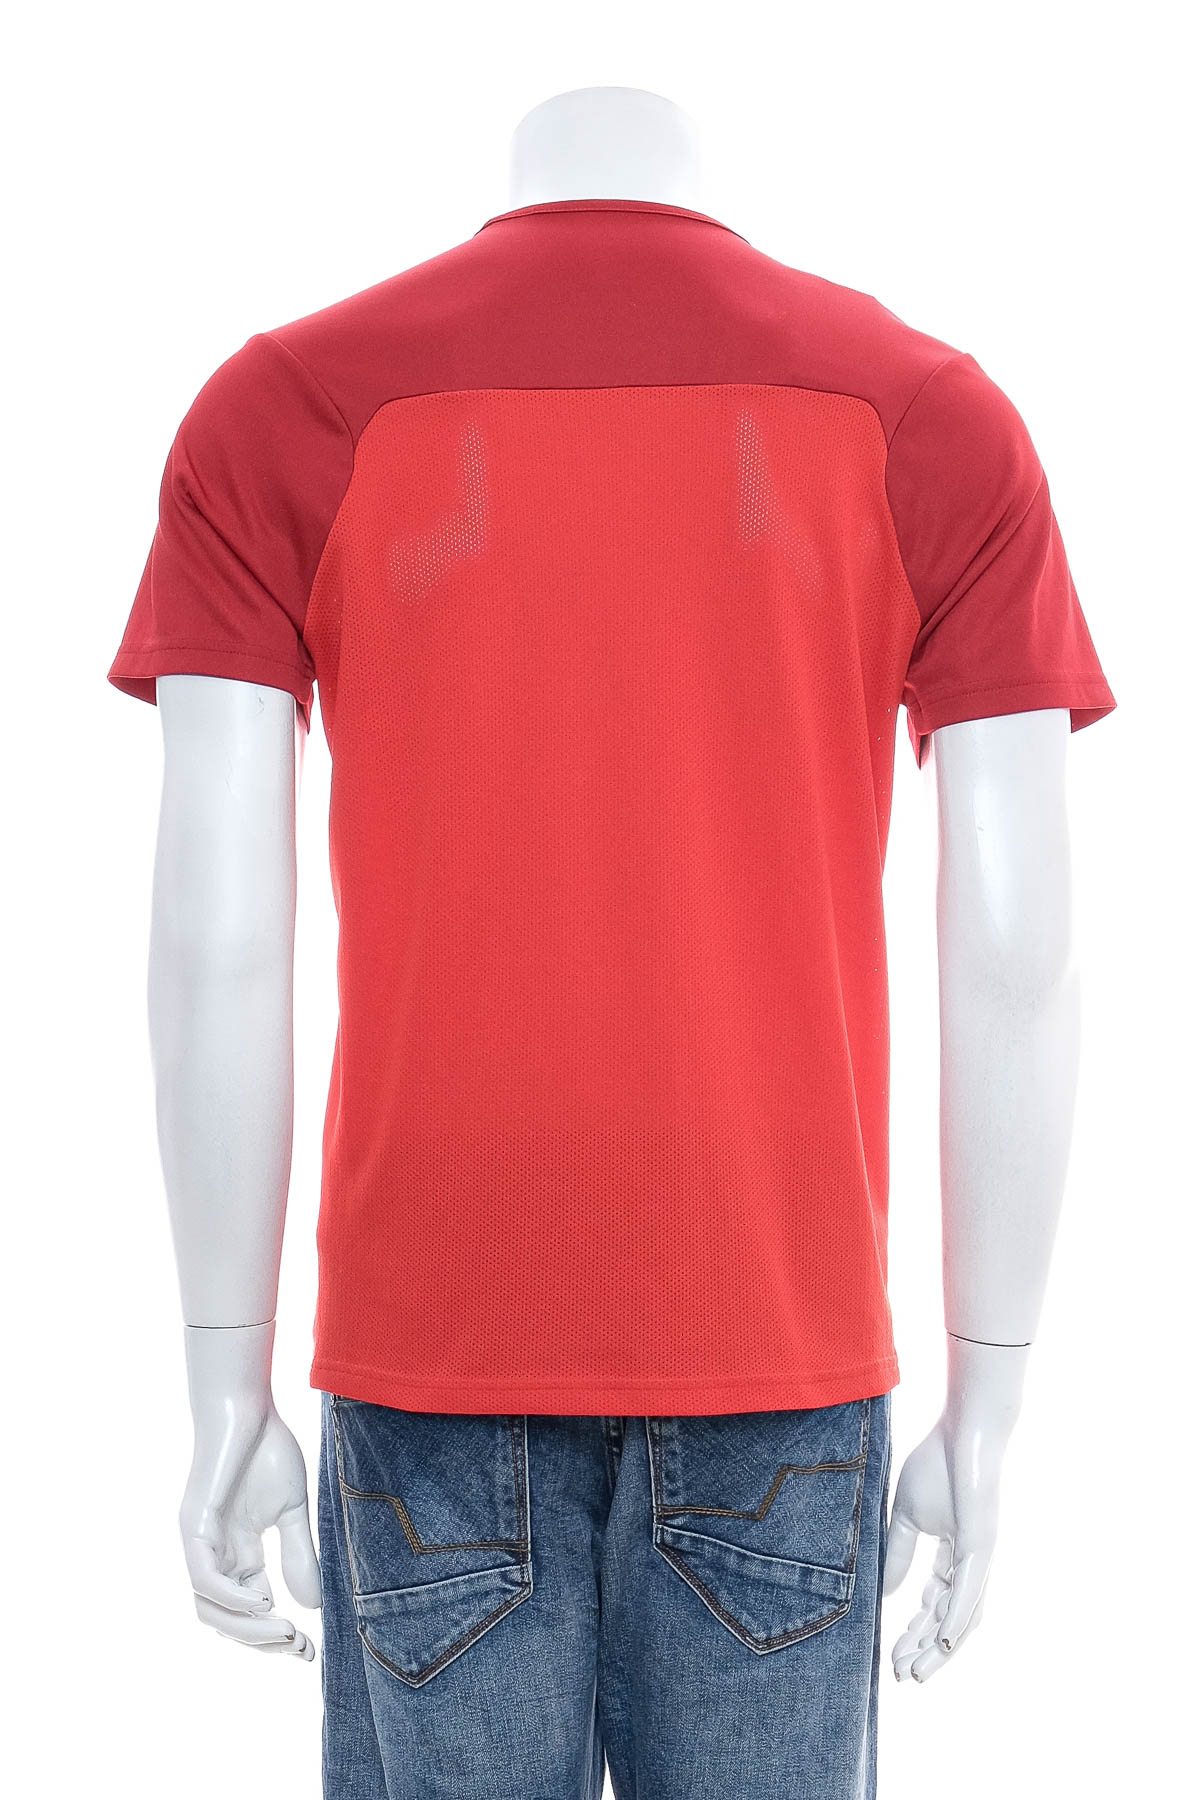 Ανδρικό μπλουζάκι - PUMA - 1